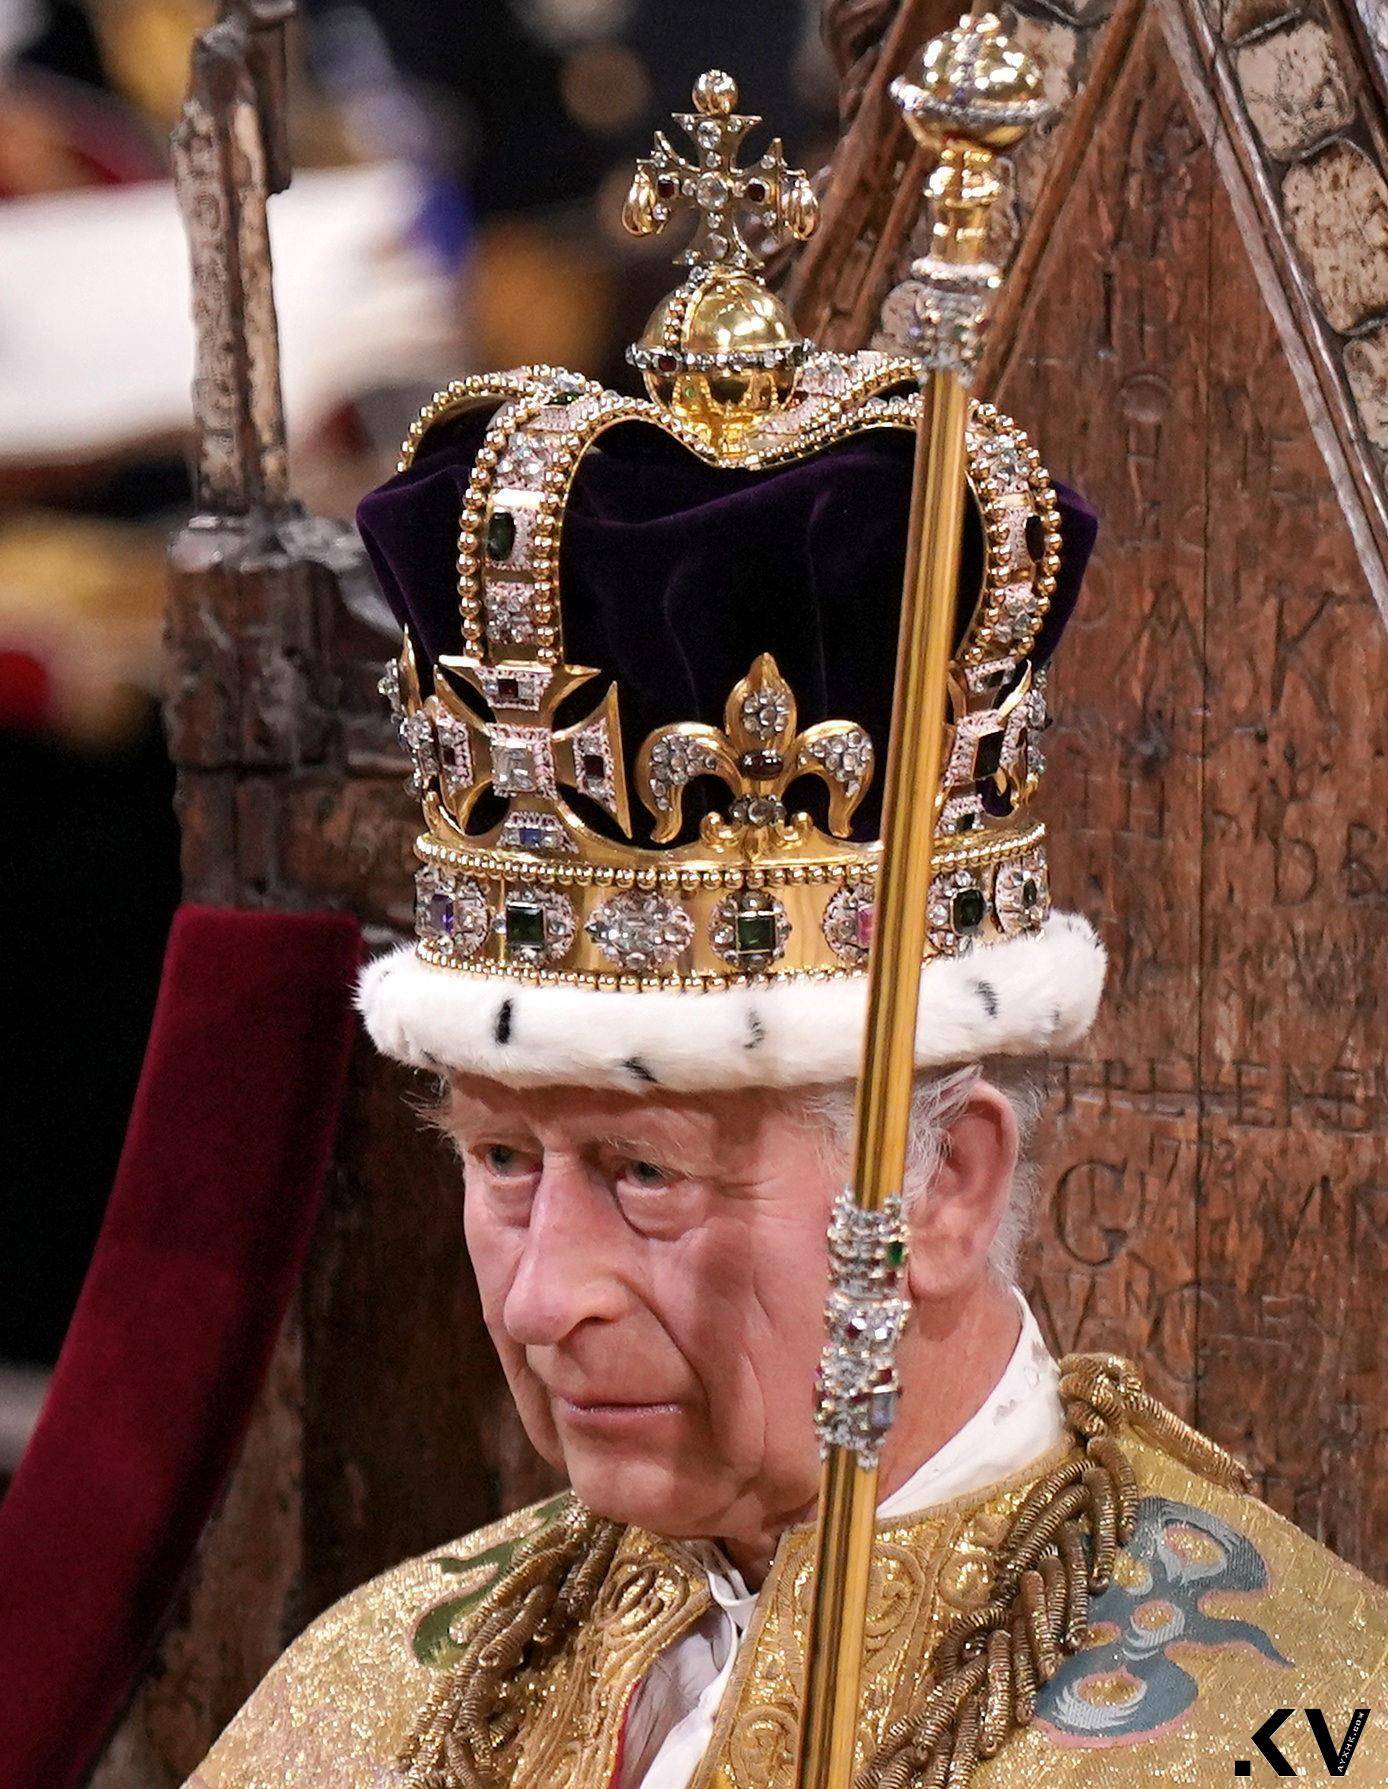 英国王加冕王冠一生只戴一次　礼成换戴闪耀317.4克拉巨钻冠冕 时尚穿搭 图3张